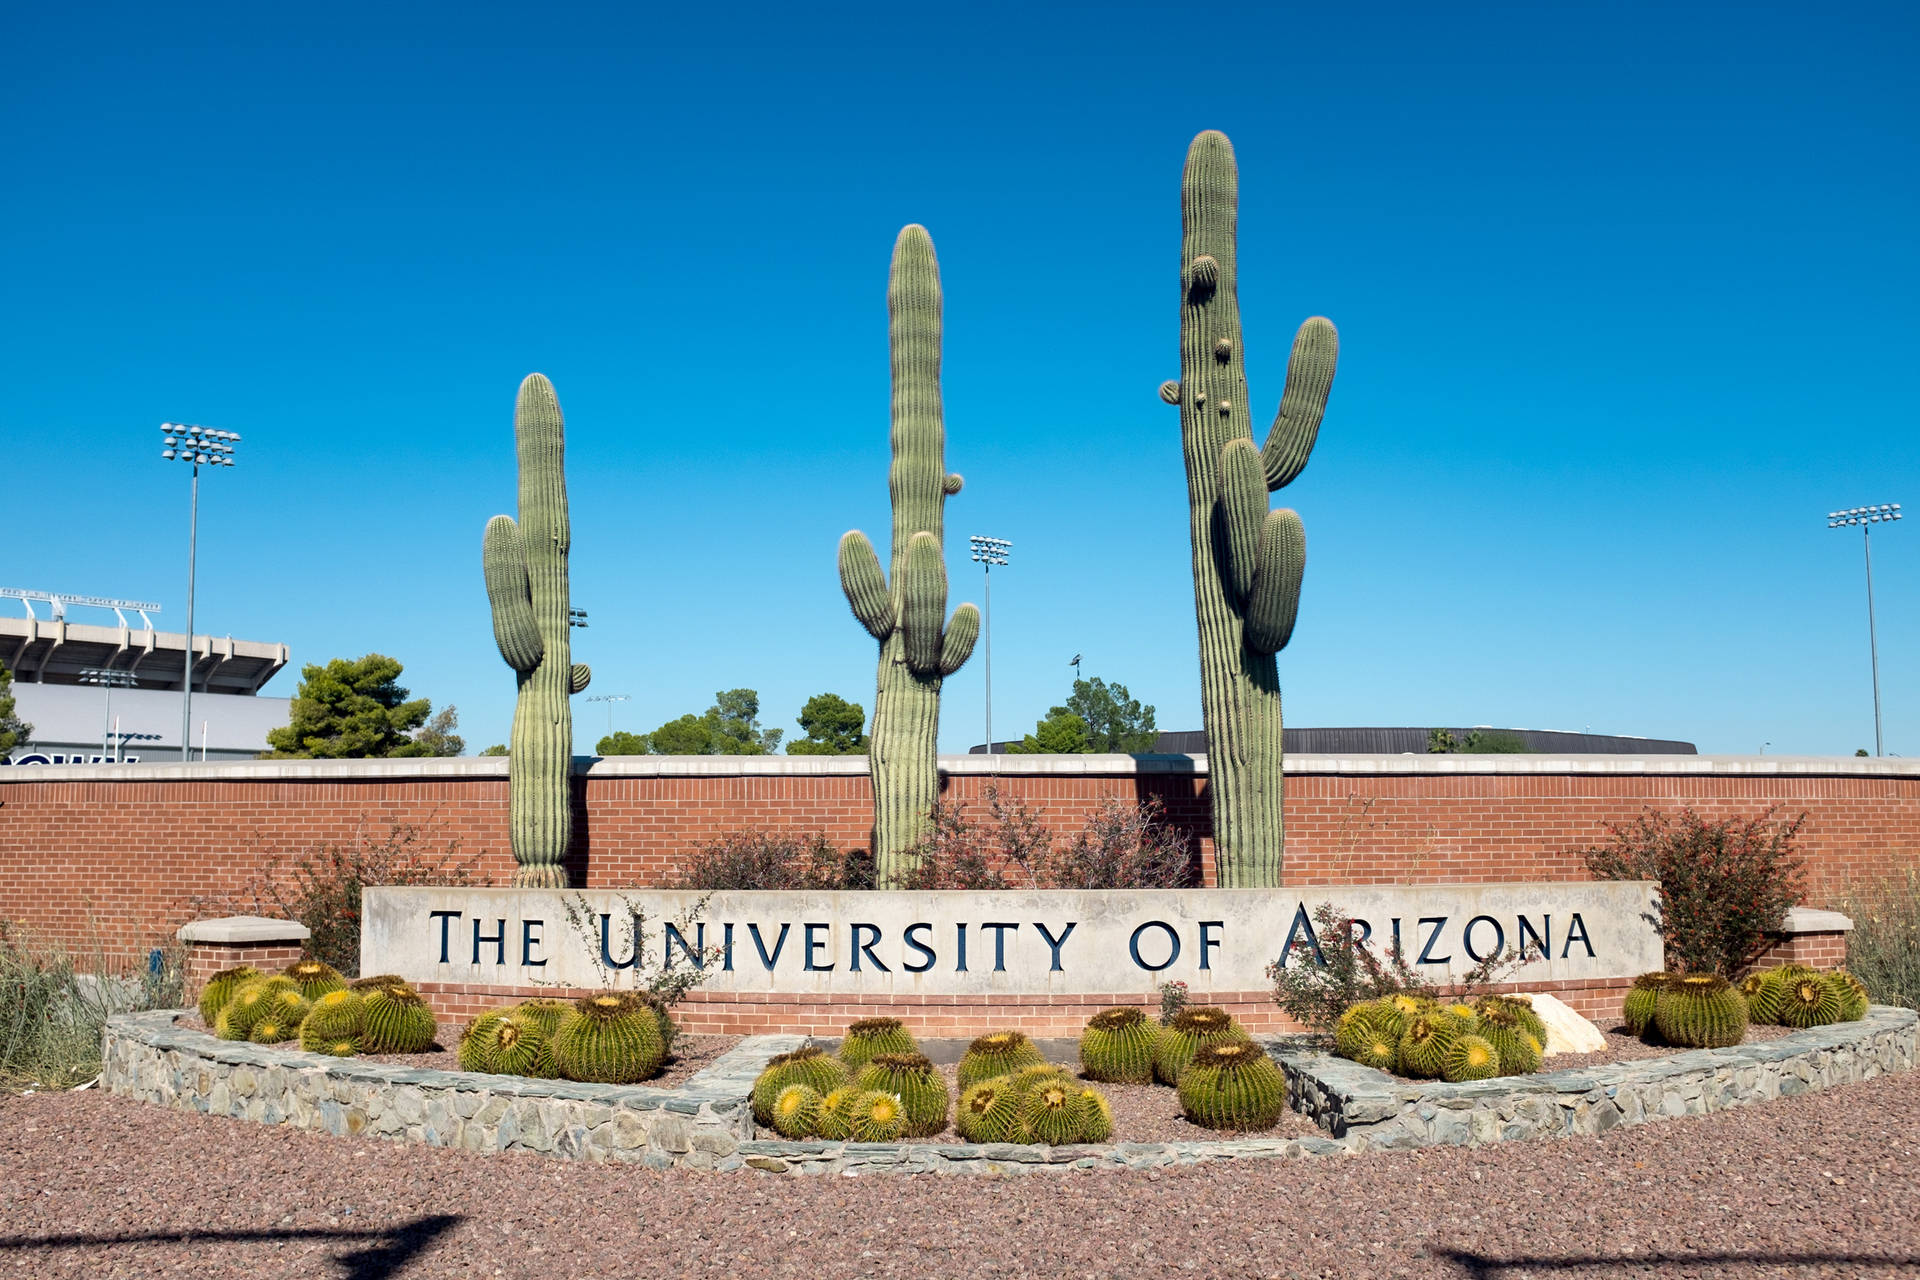 University Of Arizona Arranged Cacti